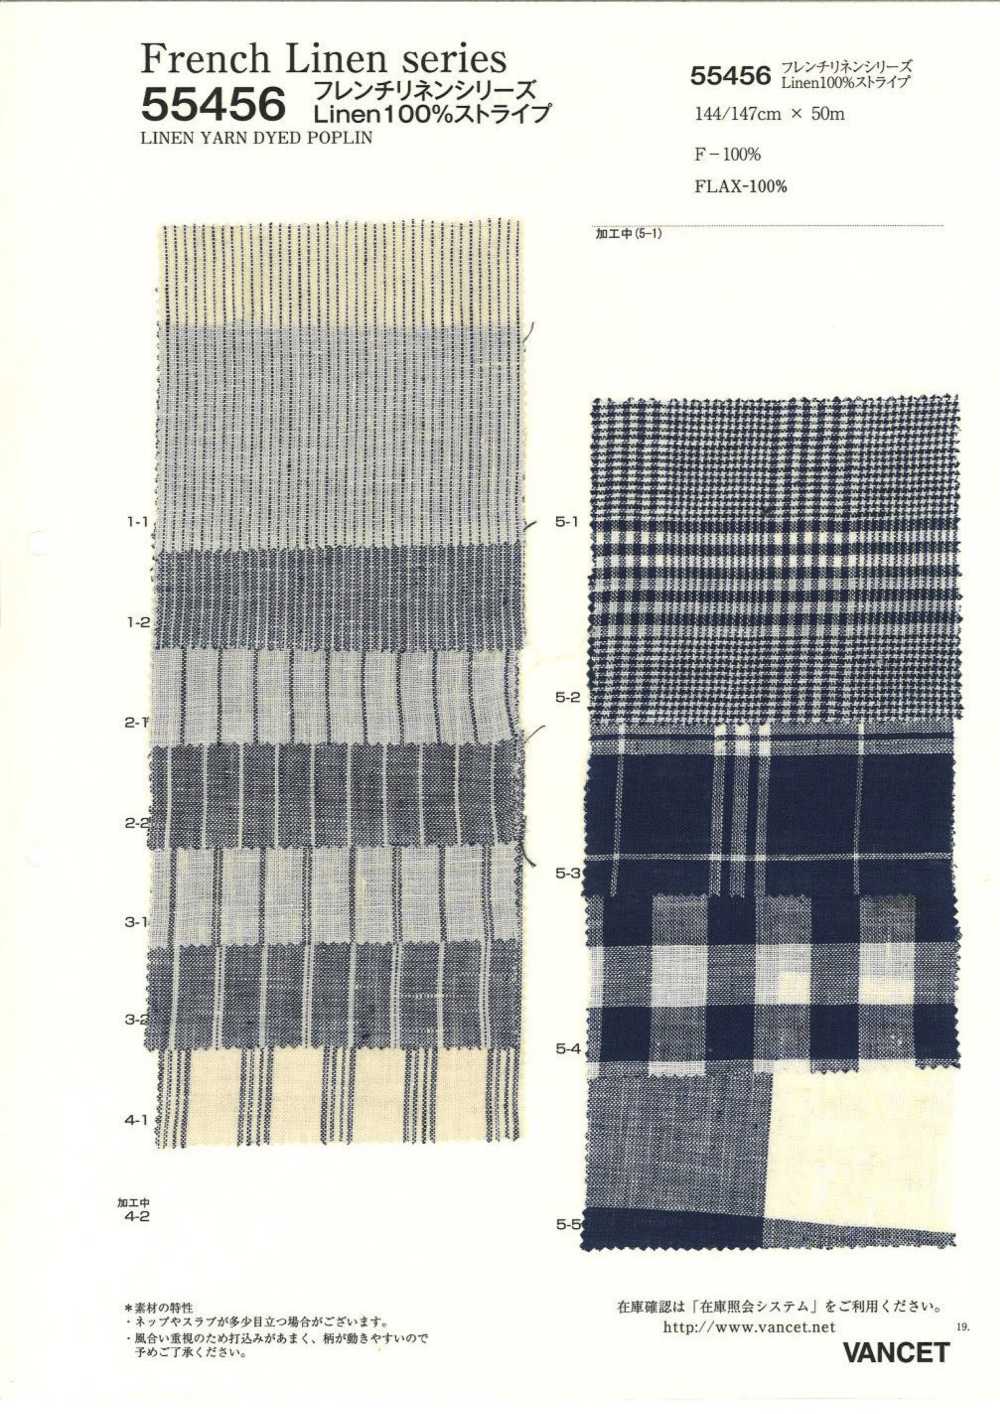 55456 French Linen Series Linen100% Stripe[Textile / Fabric] VANCET